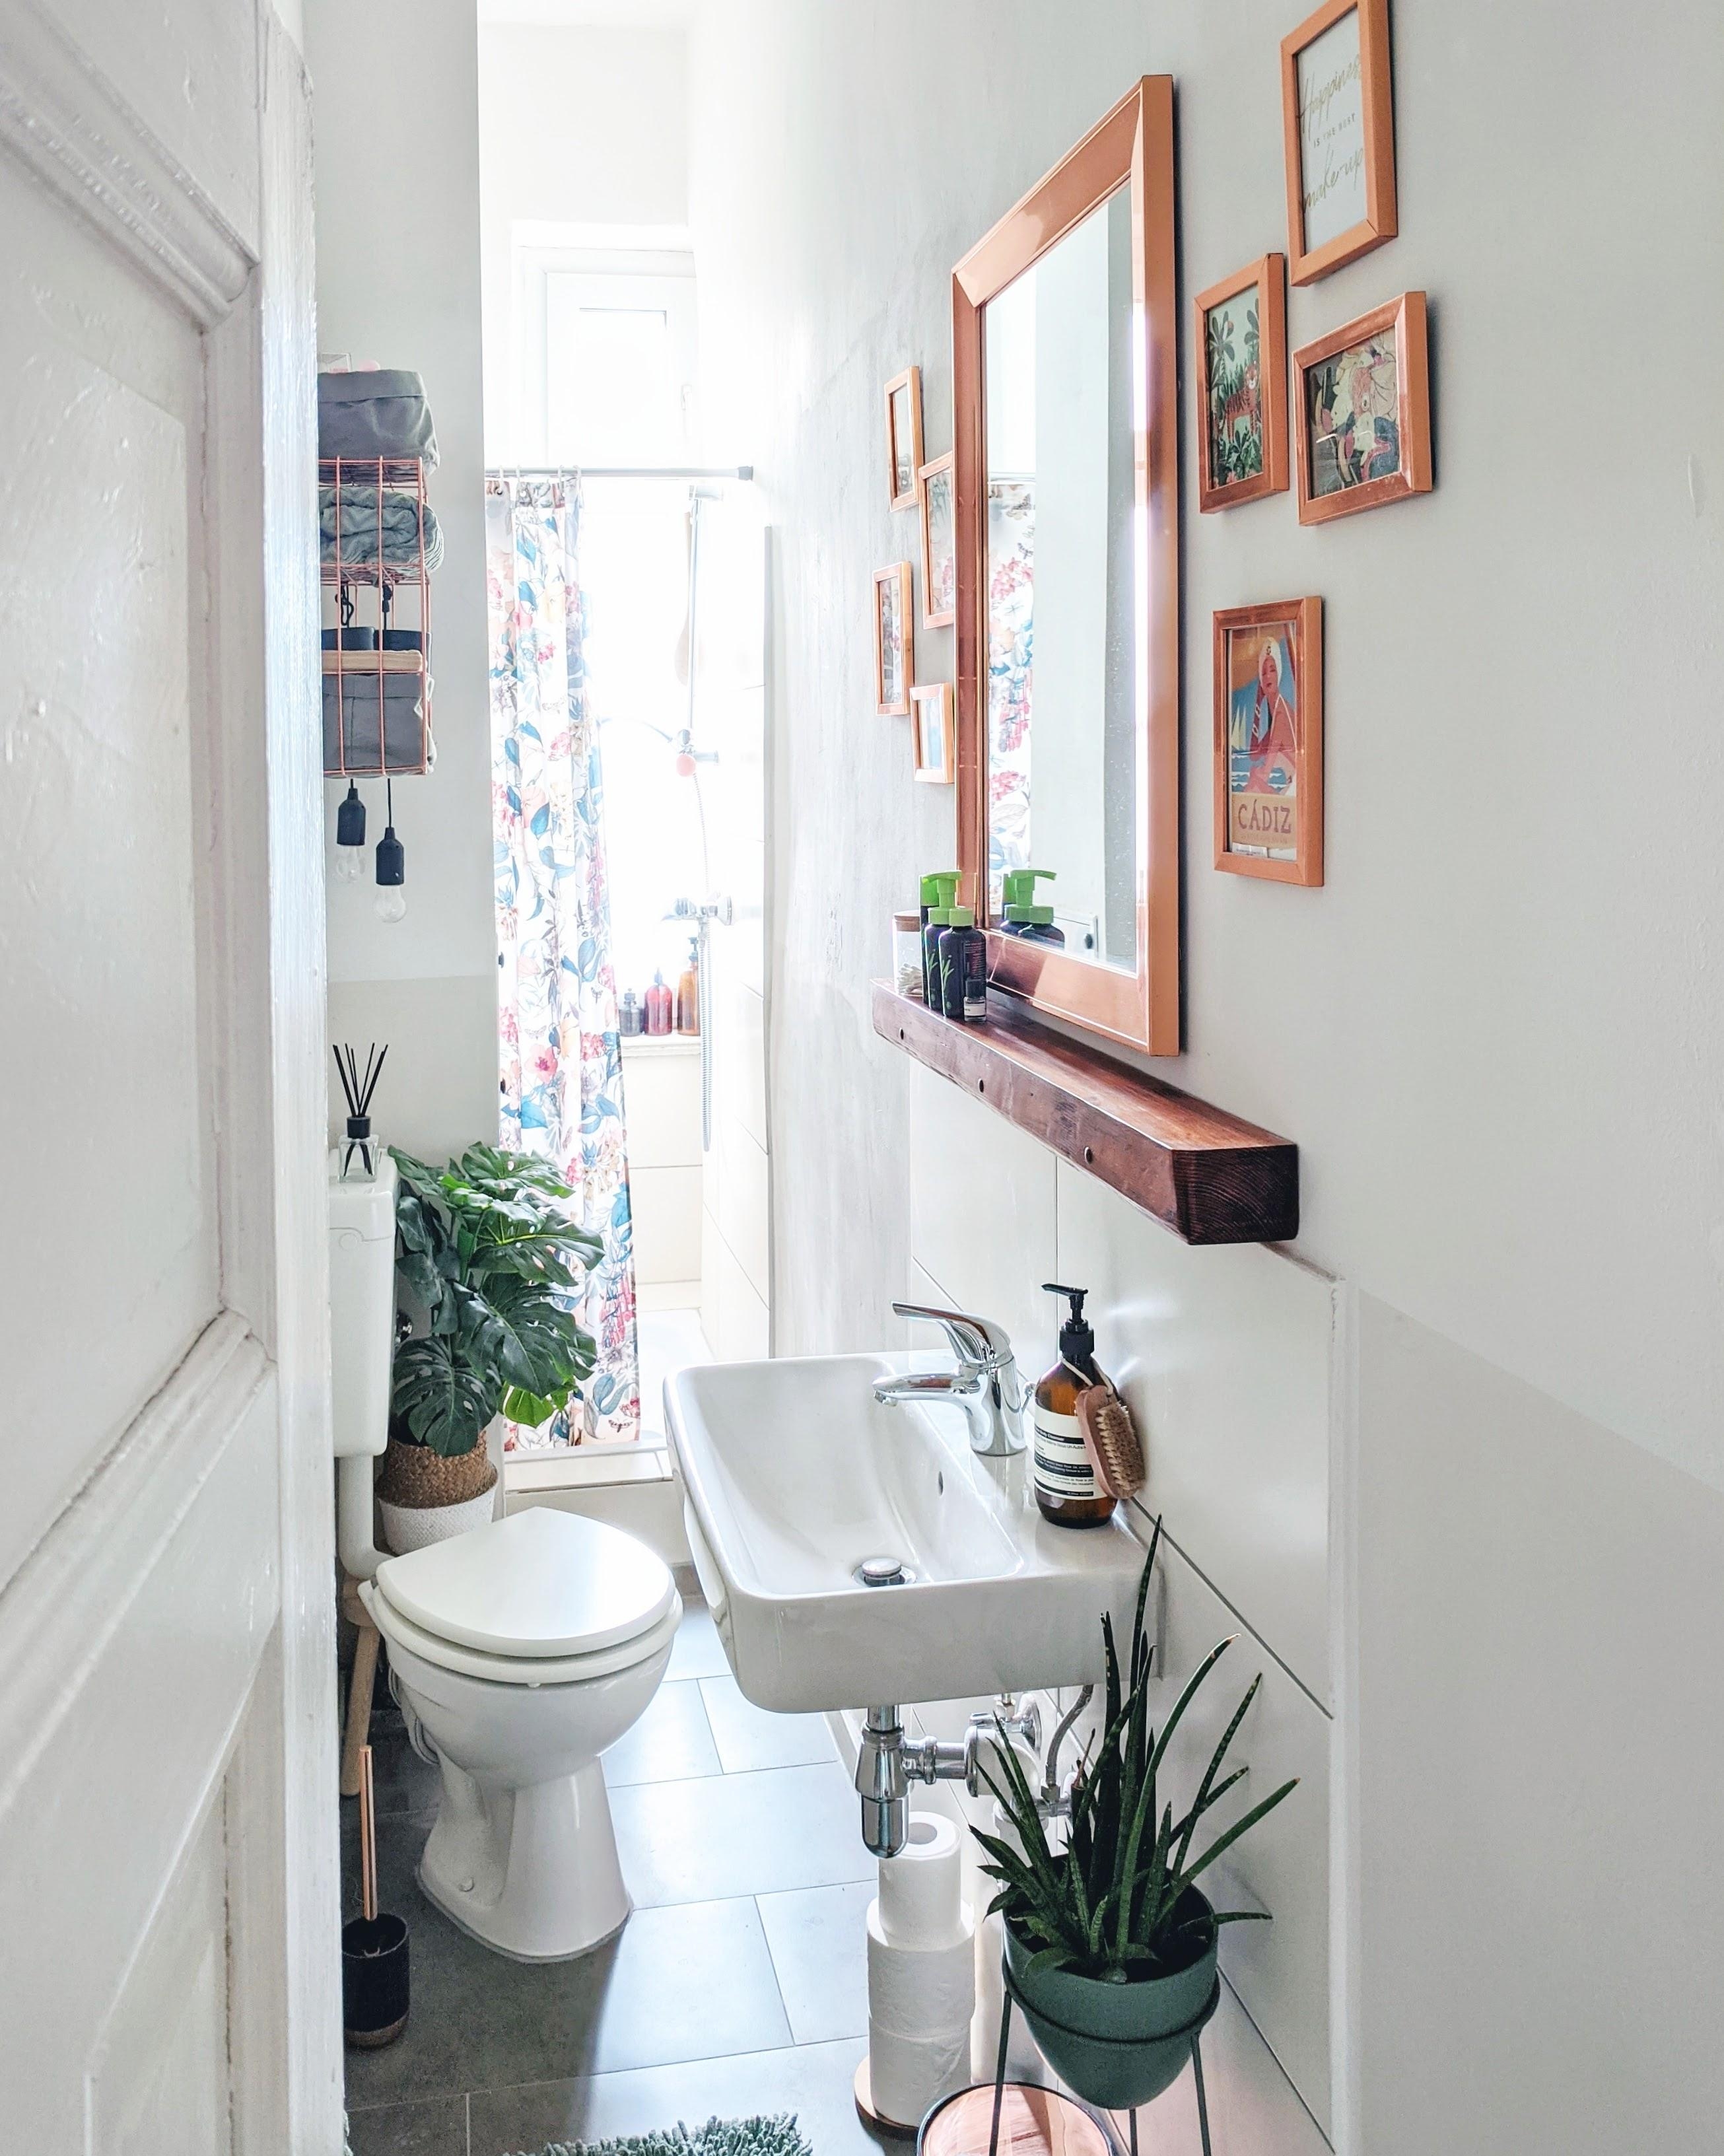 Klein aber fein. #bathroom #kleinesbadezimmer #altbau #narrowbathroom #copper #interior #homestory